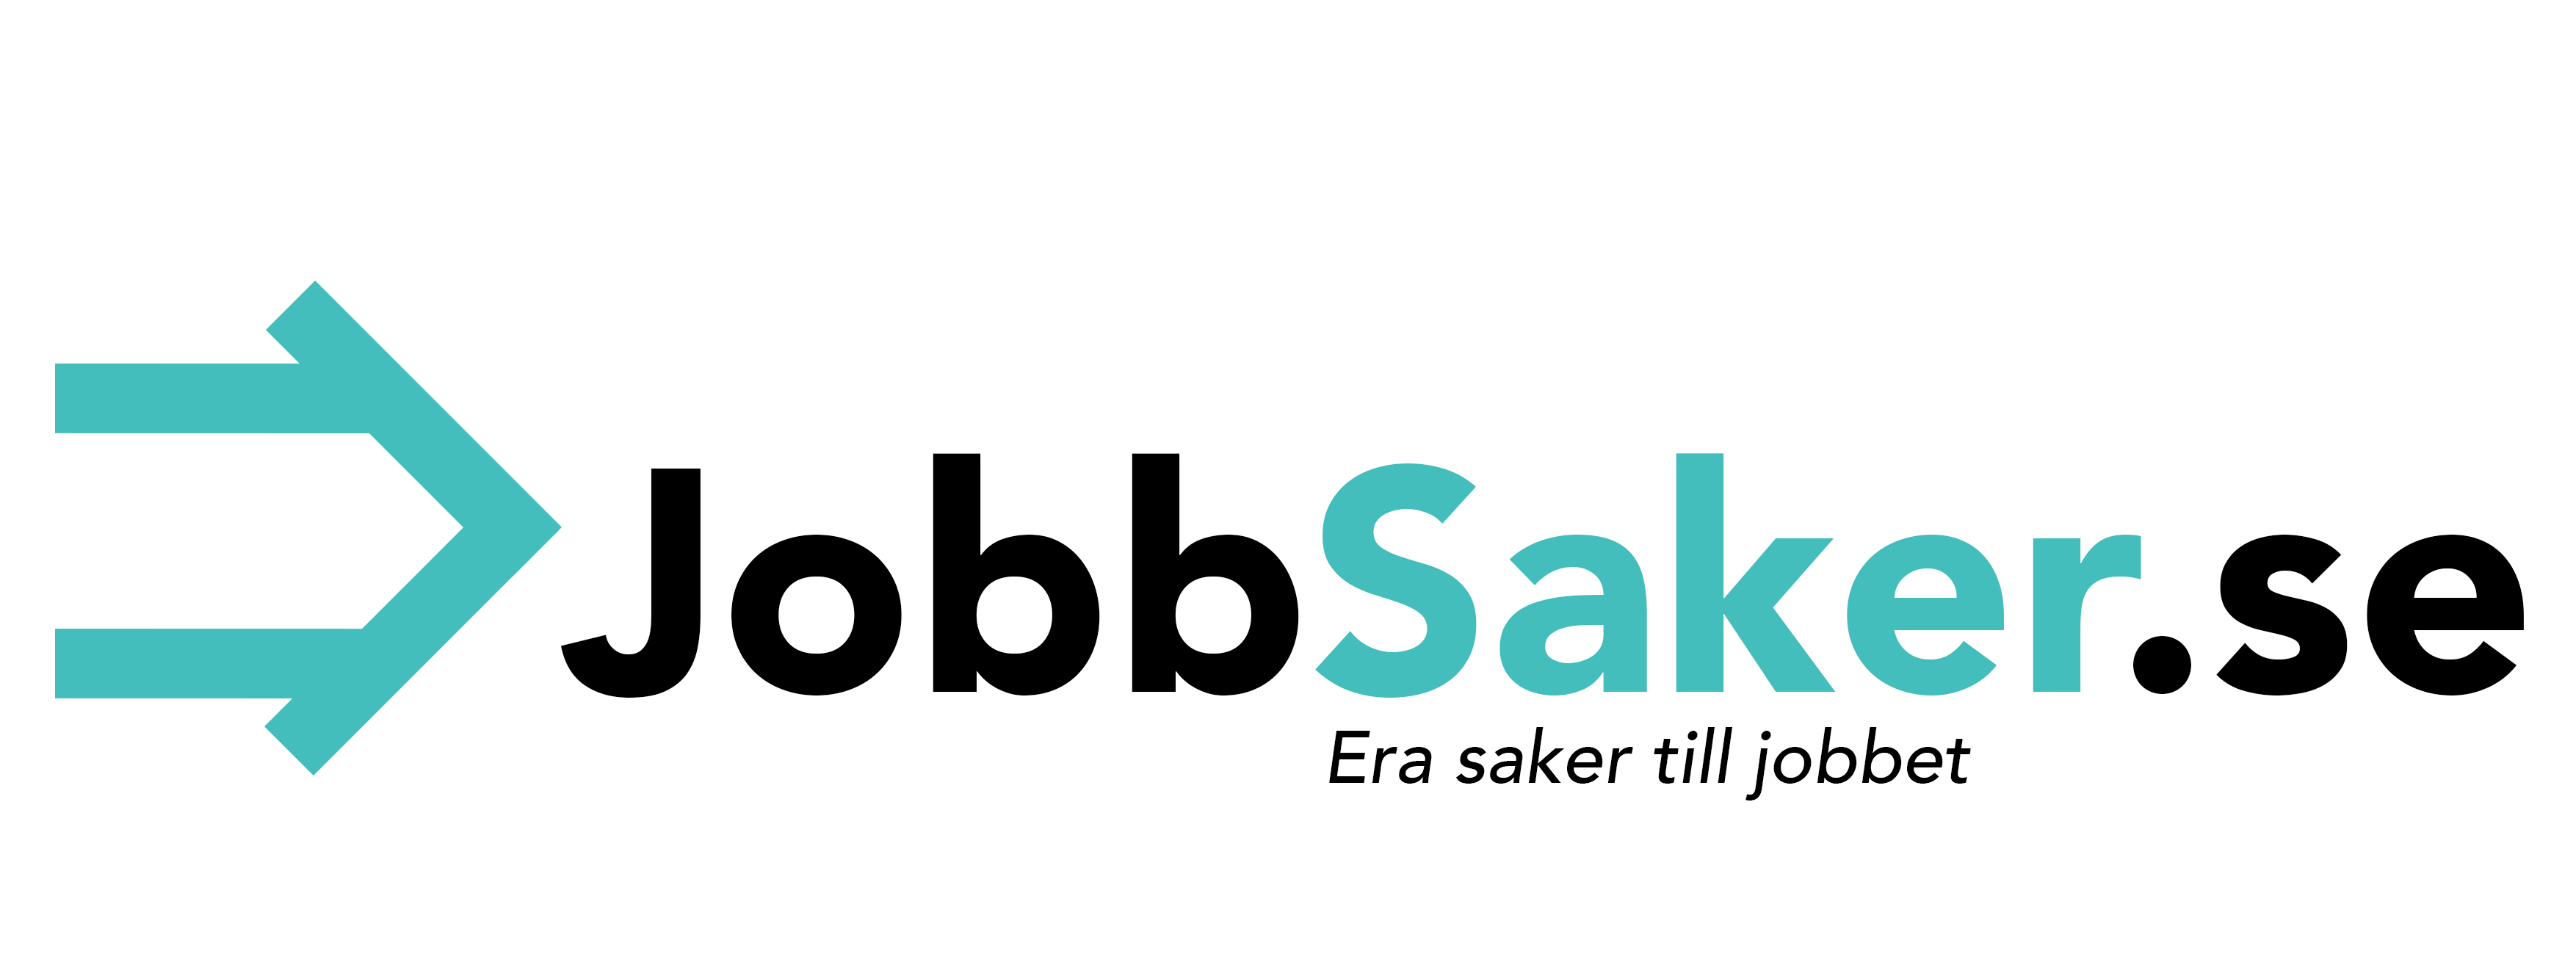 Jobbsaker.se